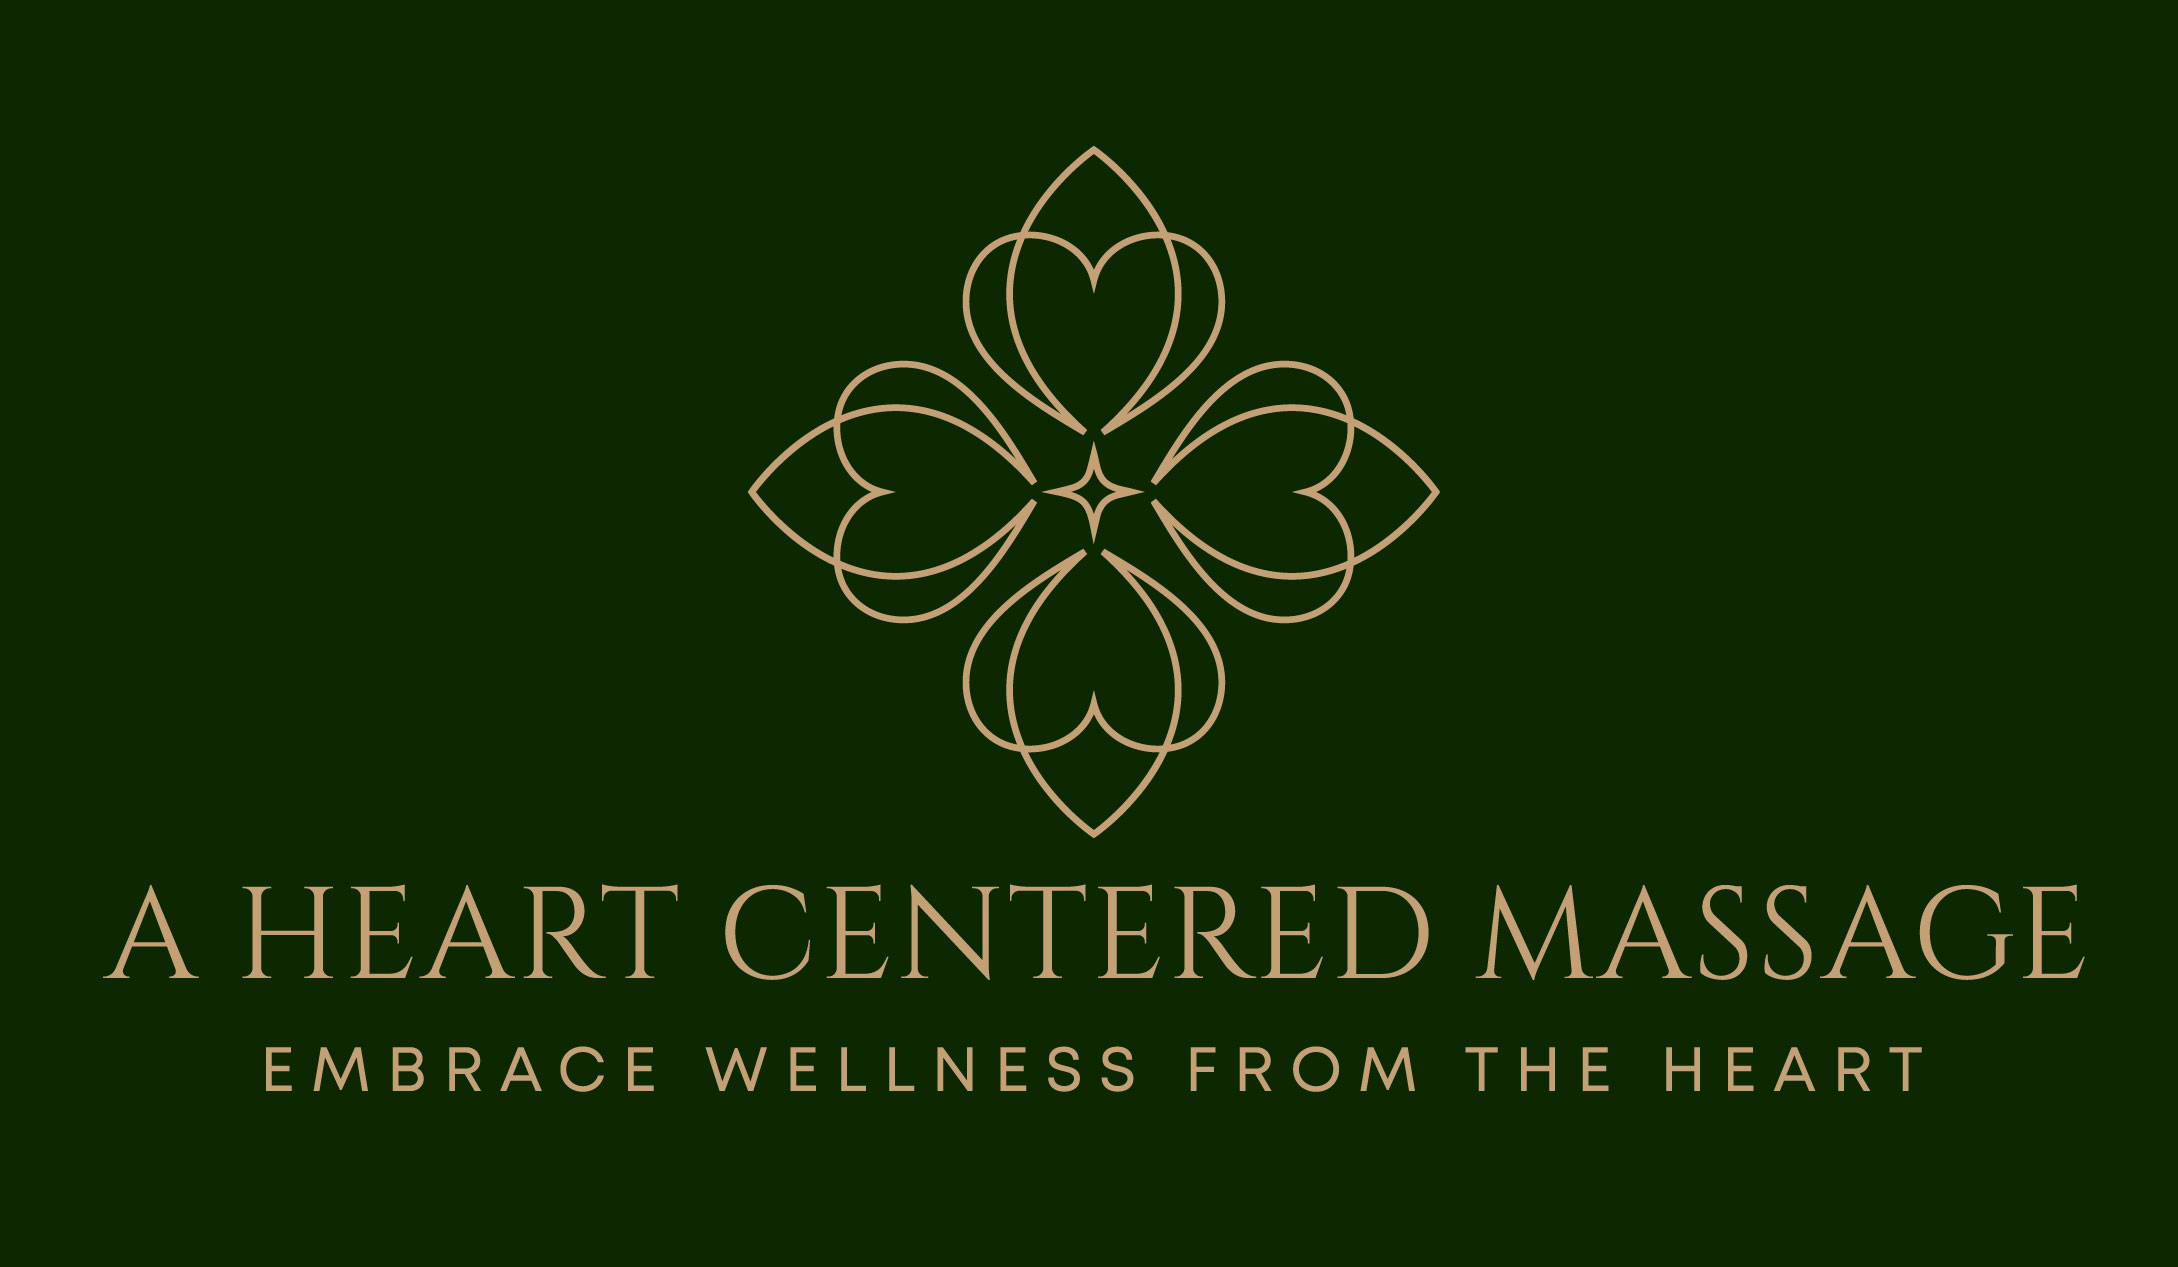 A Heart Centered Massage